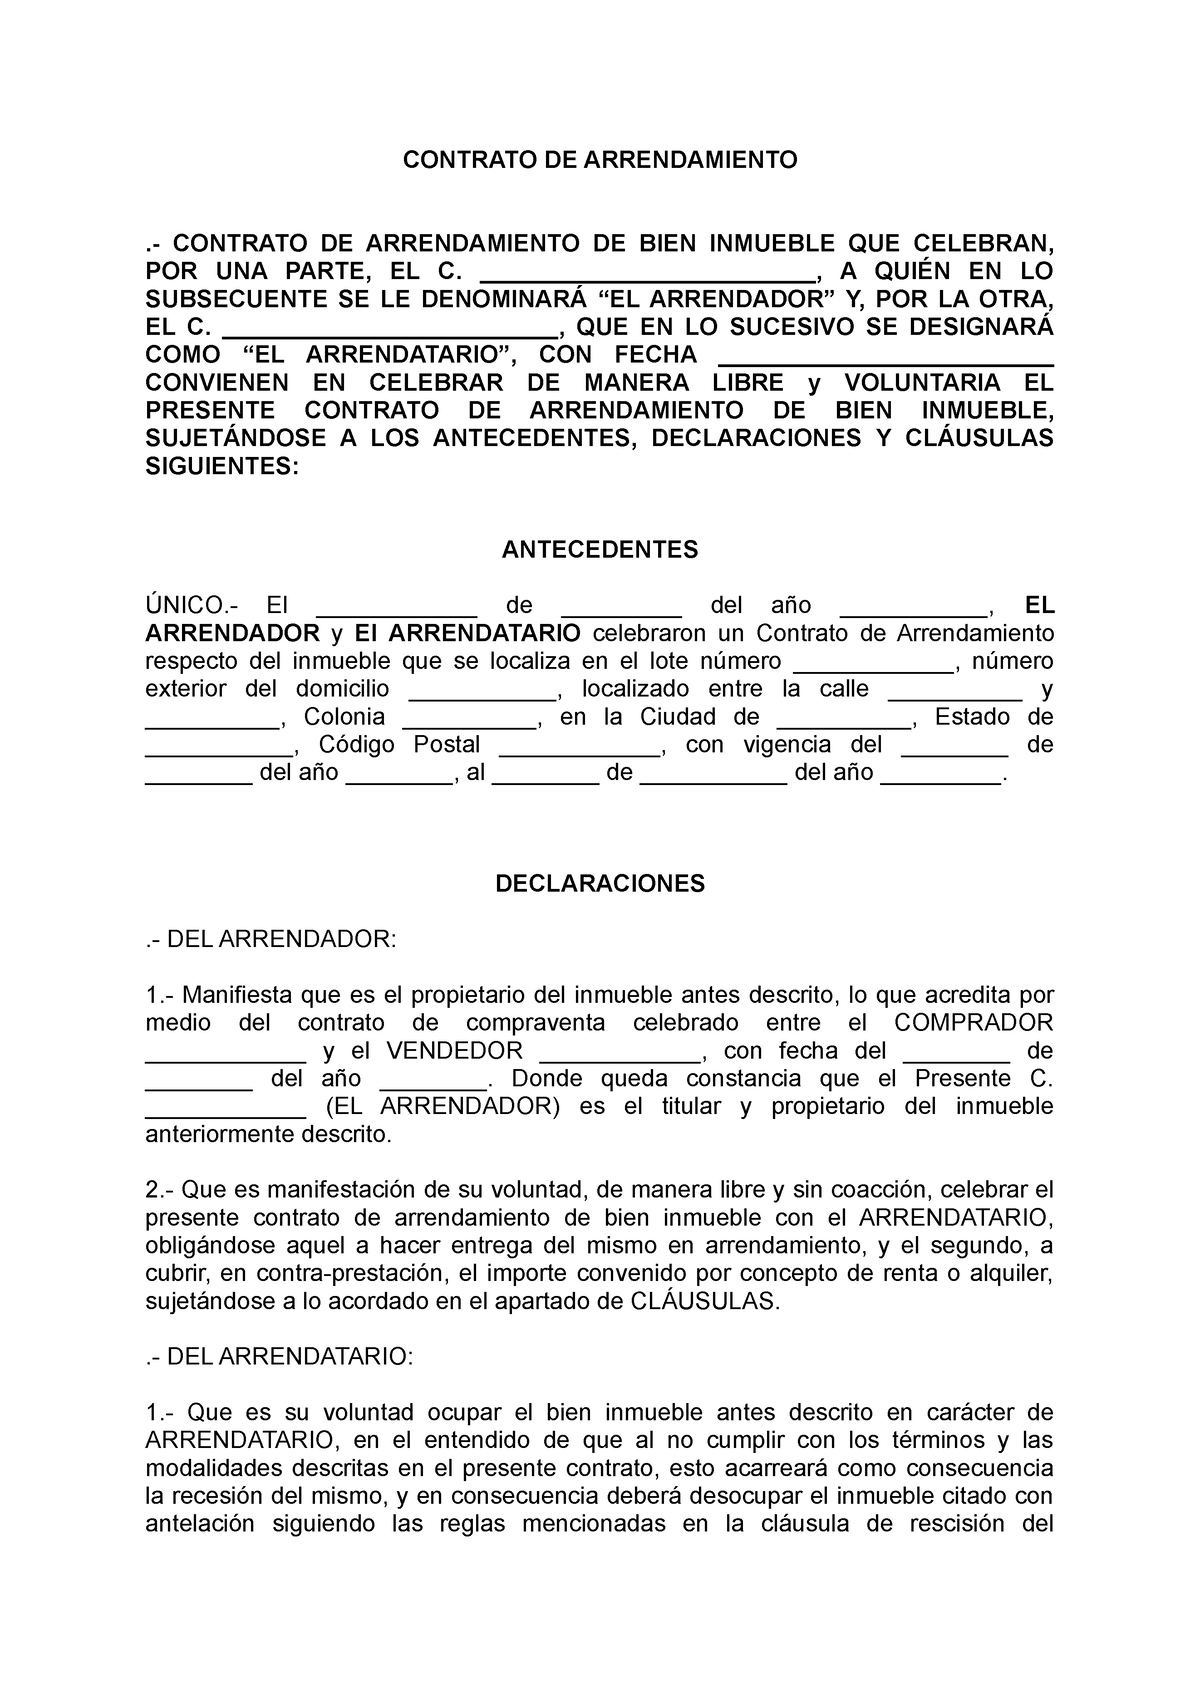 Contrato Arrendamiento Contrato De Arrendamiento Contrato De Arrendamiento De Bien Inmueble 6267